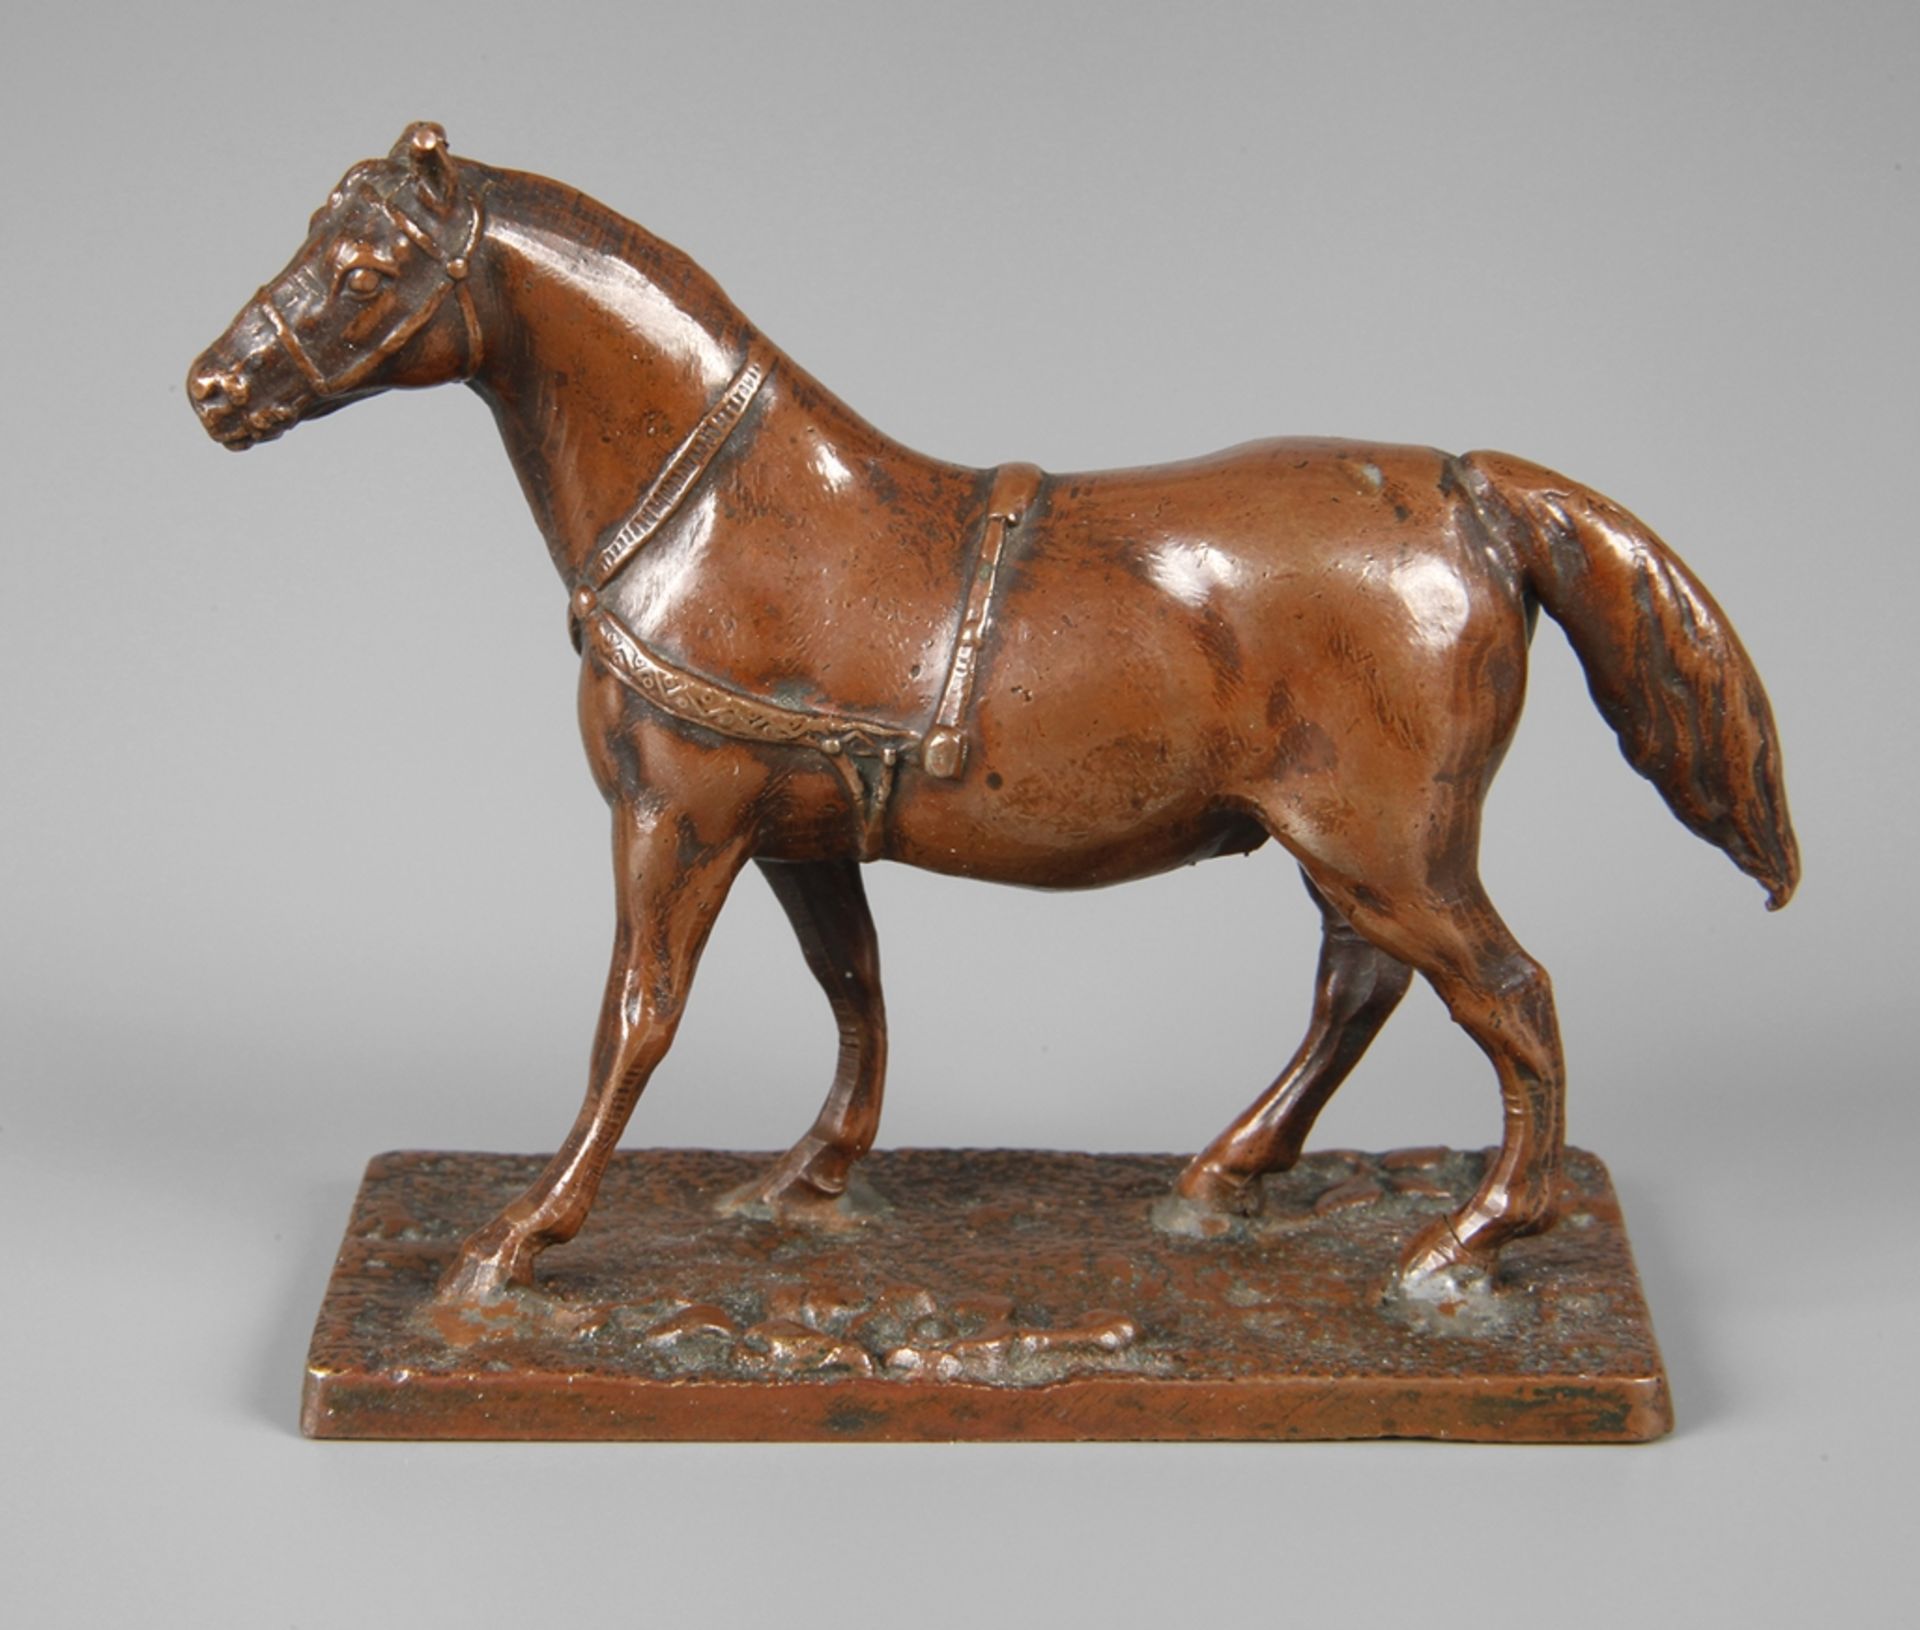 Miniatur ZugpferdEnde 19. Jh., Bronze braun patiniert, stehendes Zugpferd im Geschirr, auf